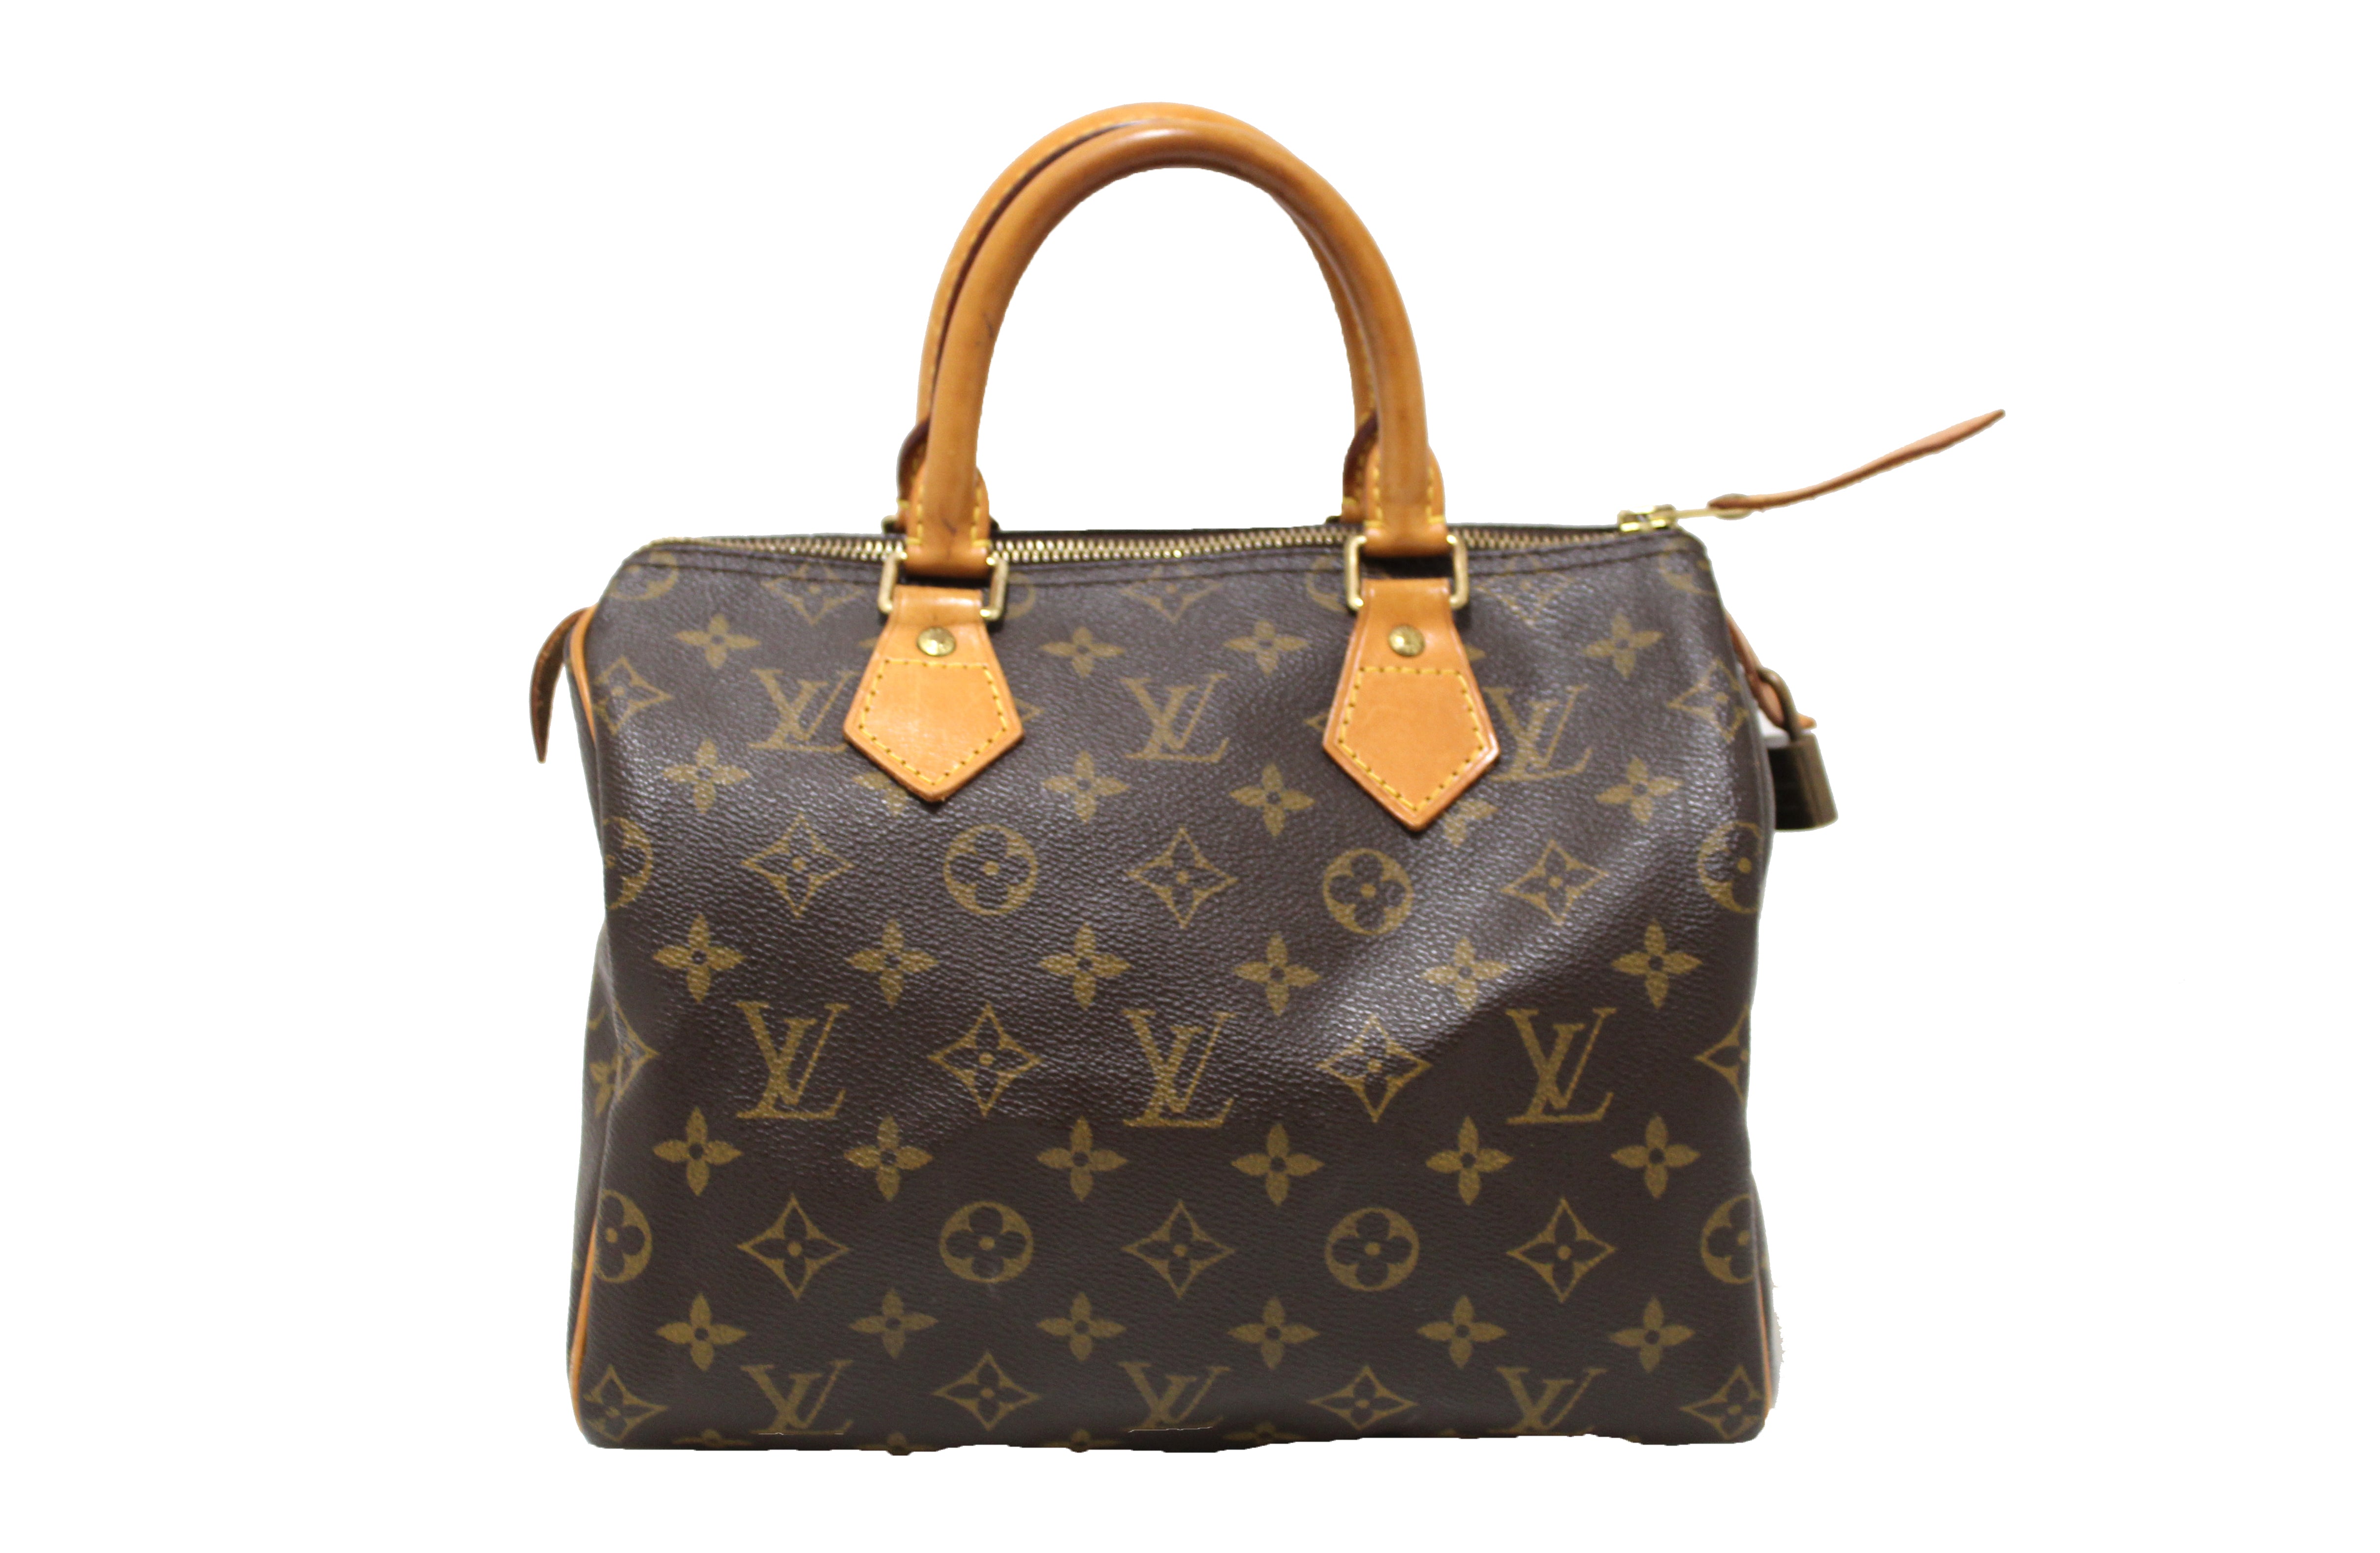 Authentic Louis Vuitton Classic Monogram Speedy 25 Handbag – Paris